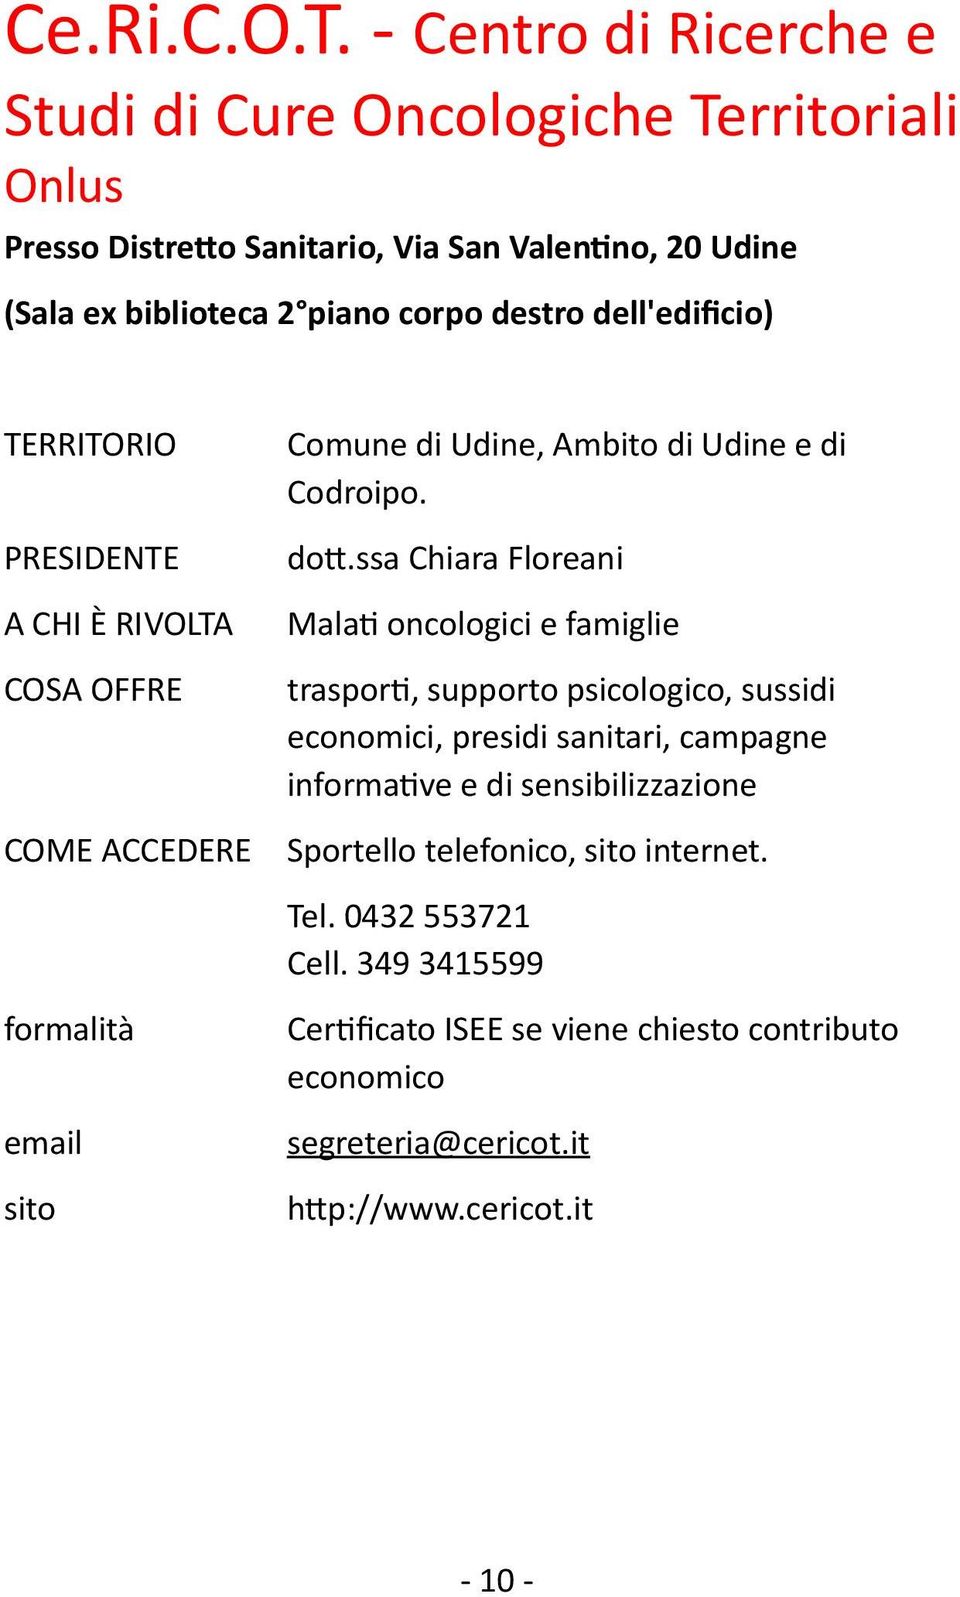 piano corpo destro dell'edificio) Comune di Udine, Ambito di Udine e di Codroipo. dott.